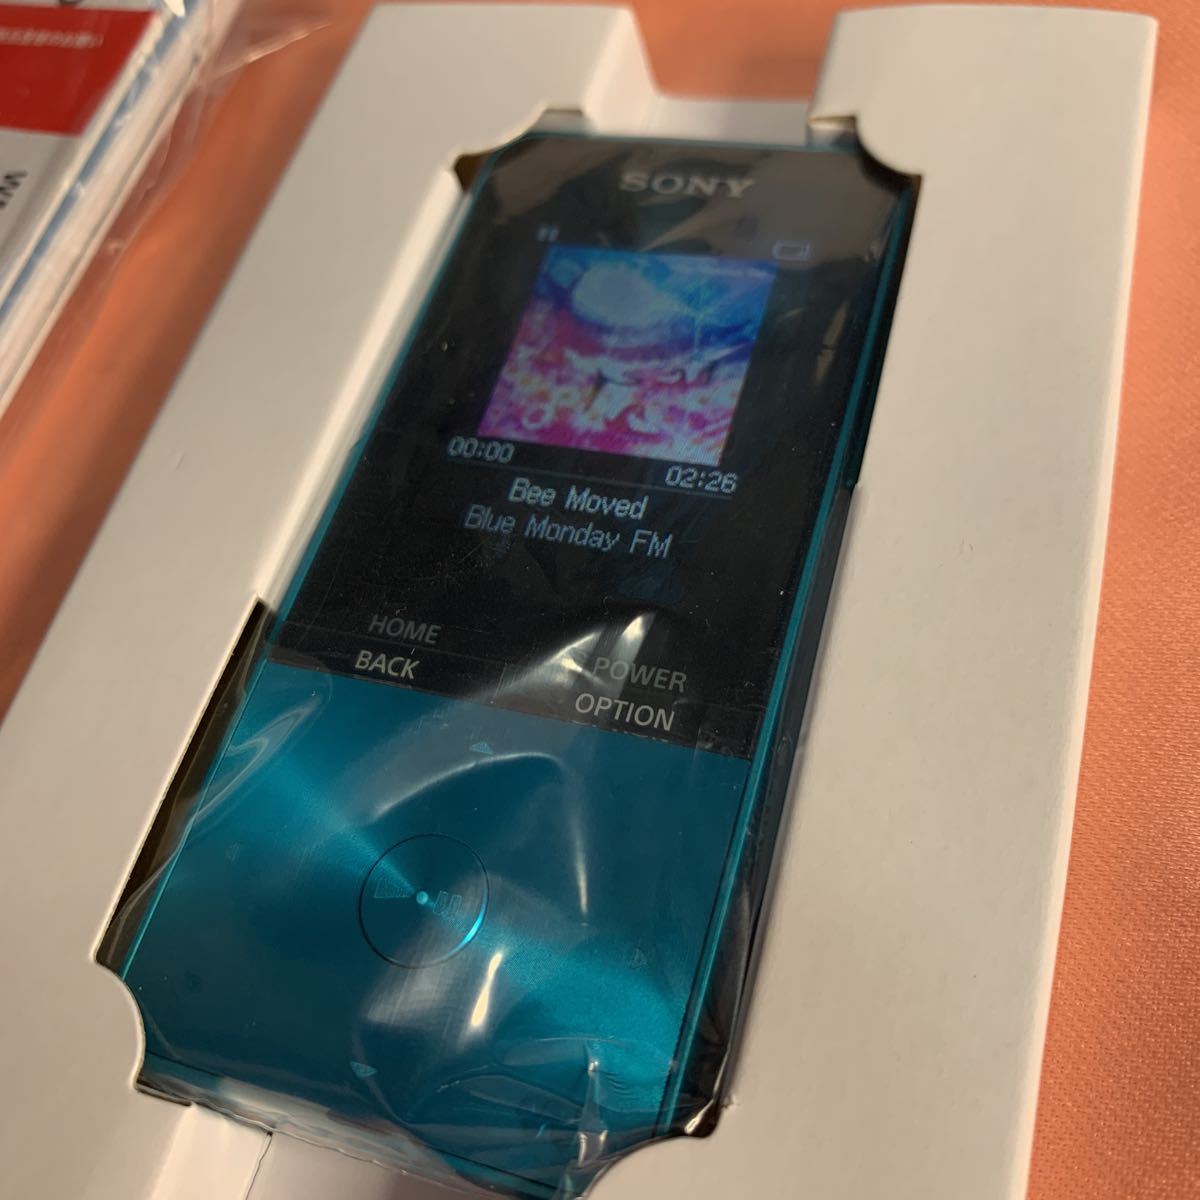 ソニー ウォークマン Sシリーズ 16GB NW-S315 : MP3プレーヤー